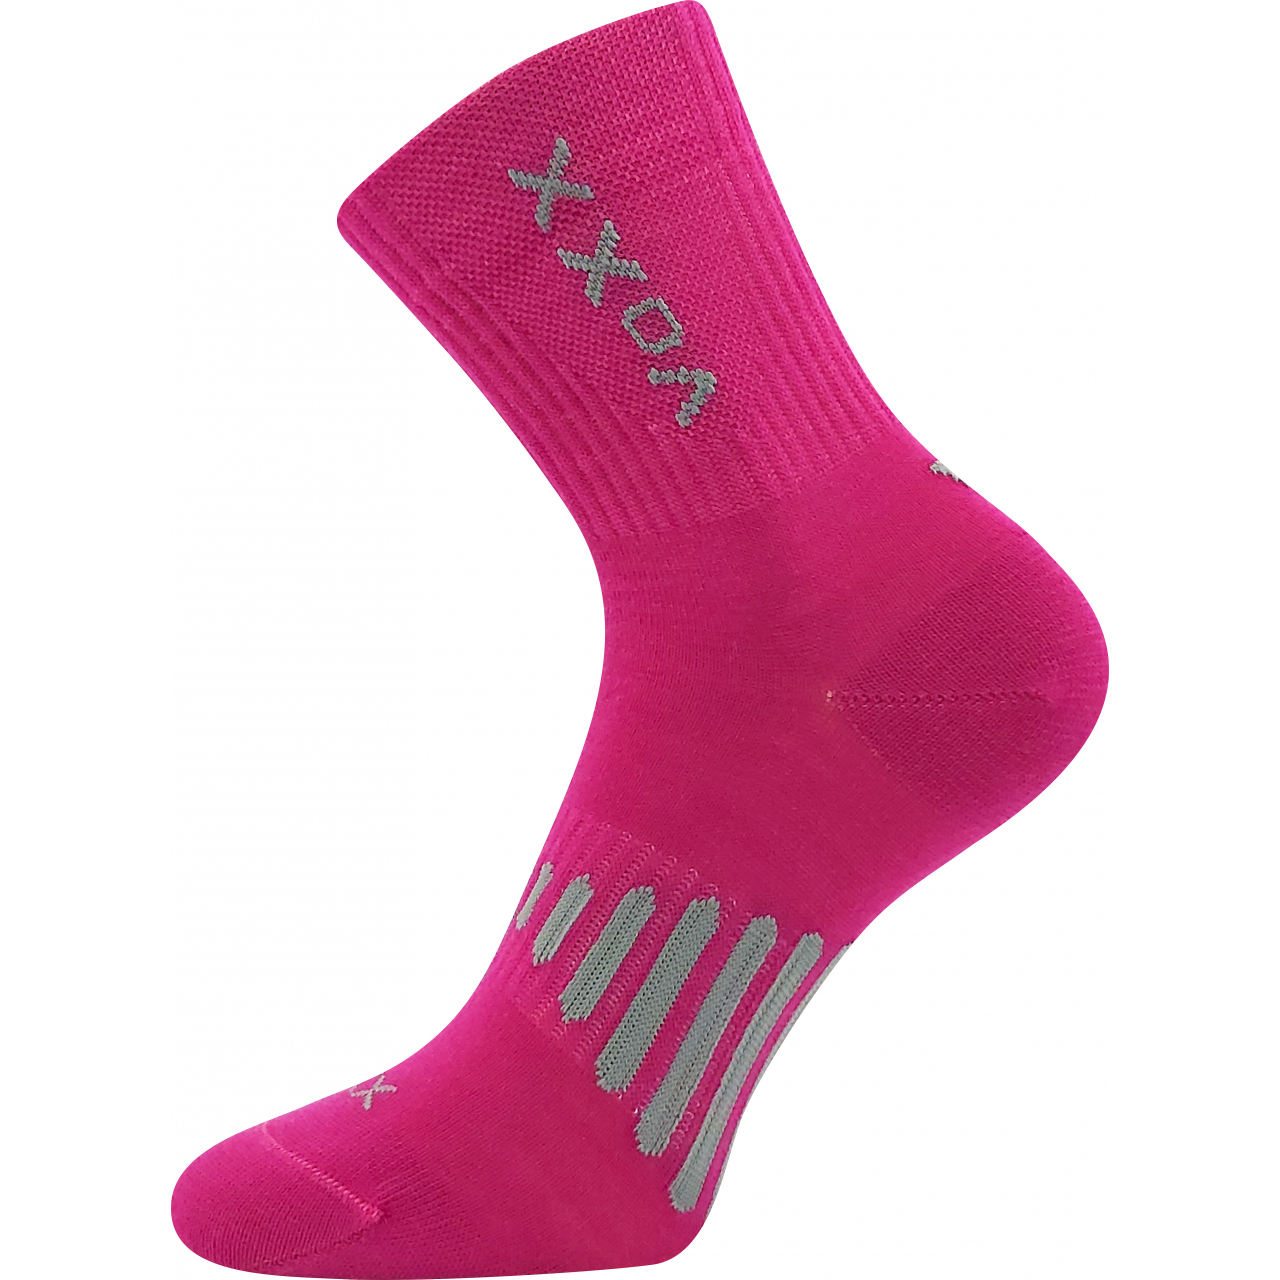 Ponožky unisex sportovní Voxx Powrix - tmavě růžové, 39-42